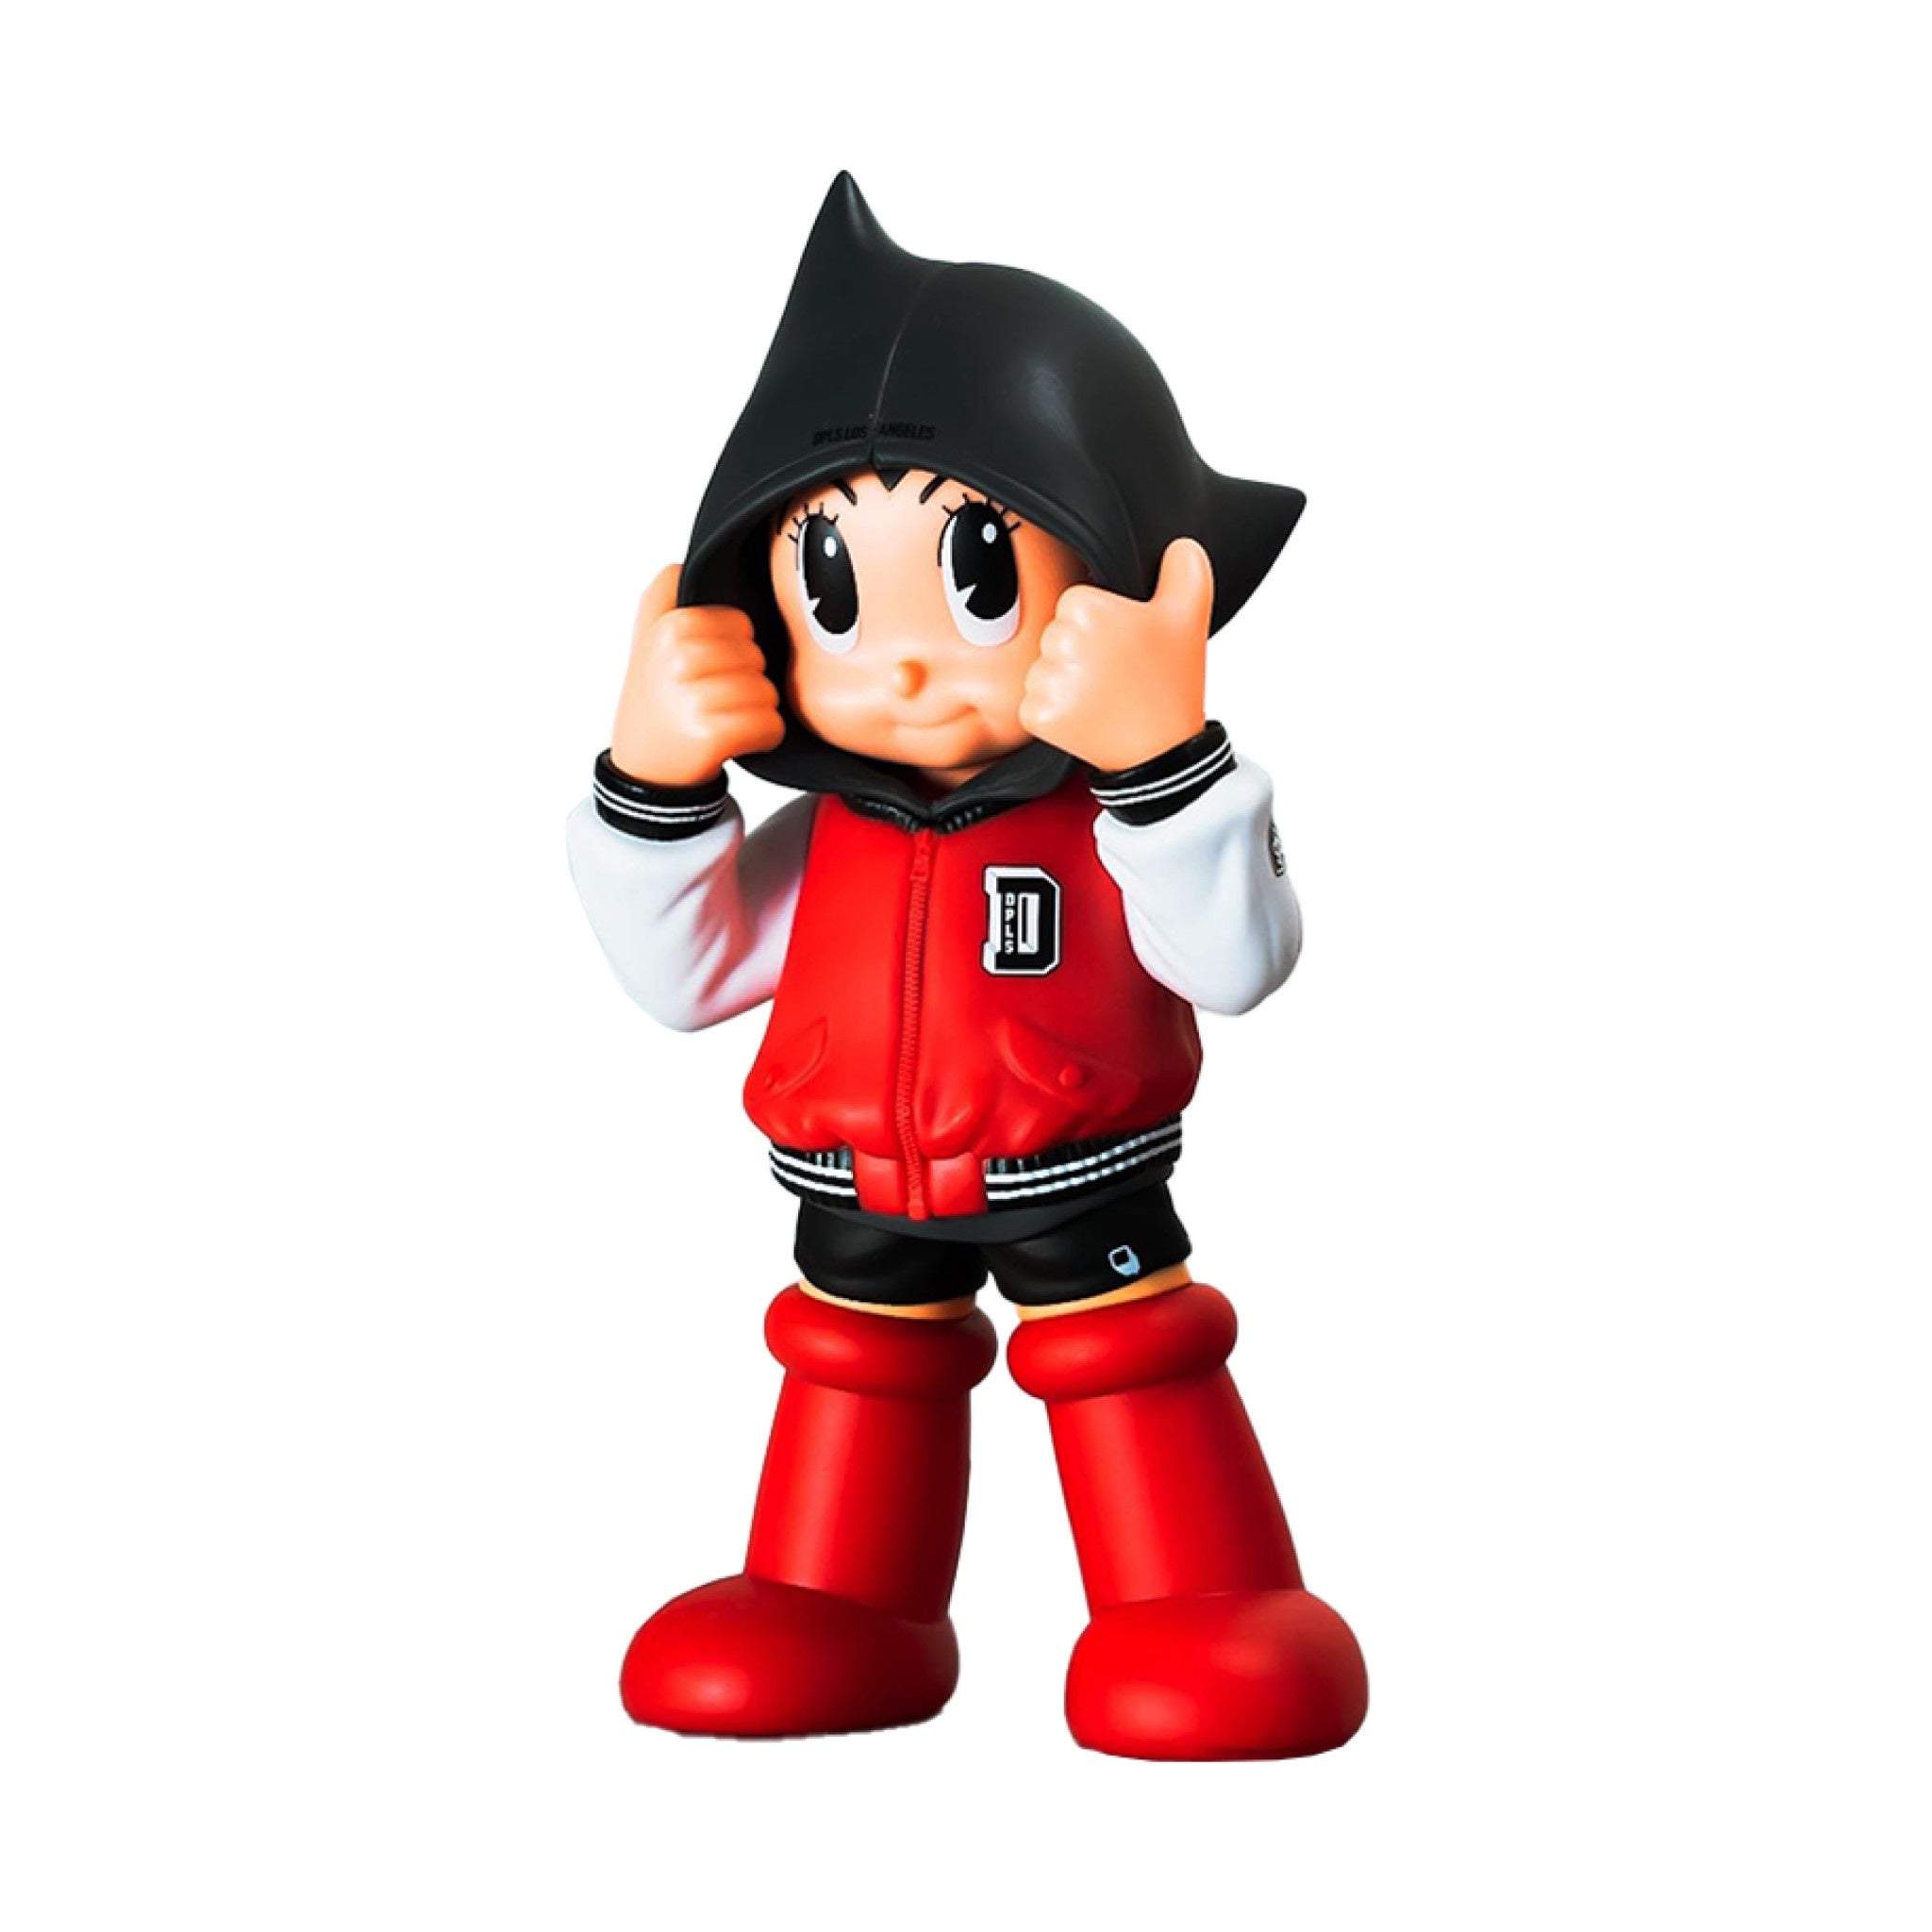 Astro Boy Hoodie DPLS Team Red 10 inch - Wynwood Walls Shop